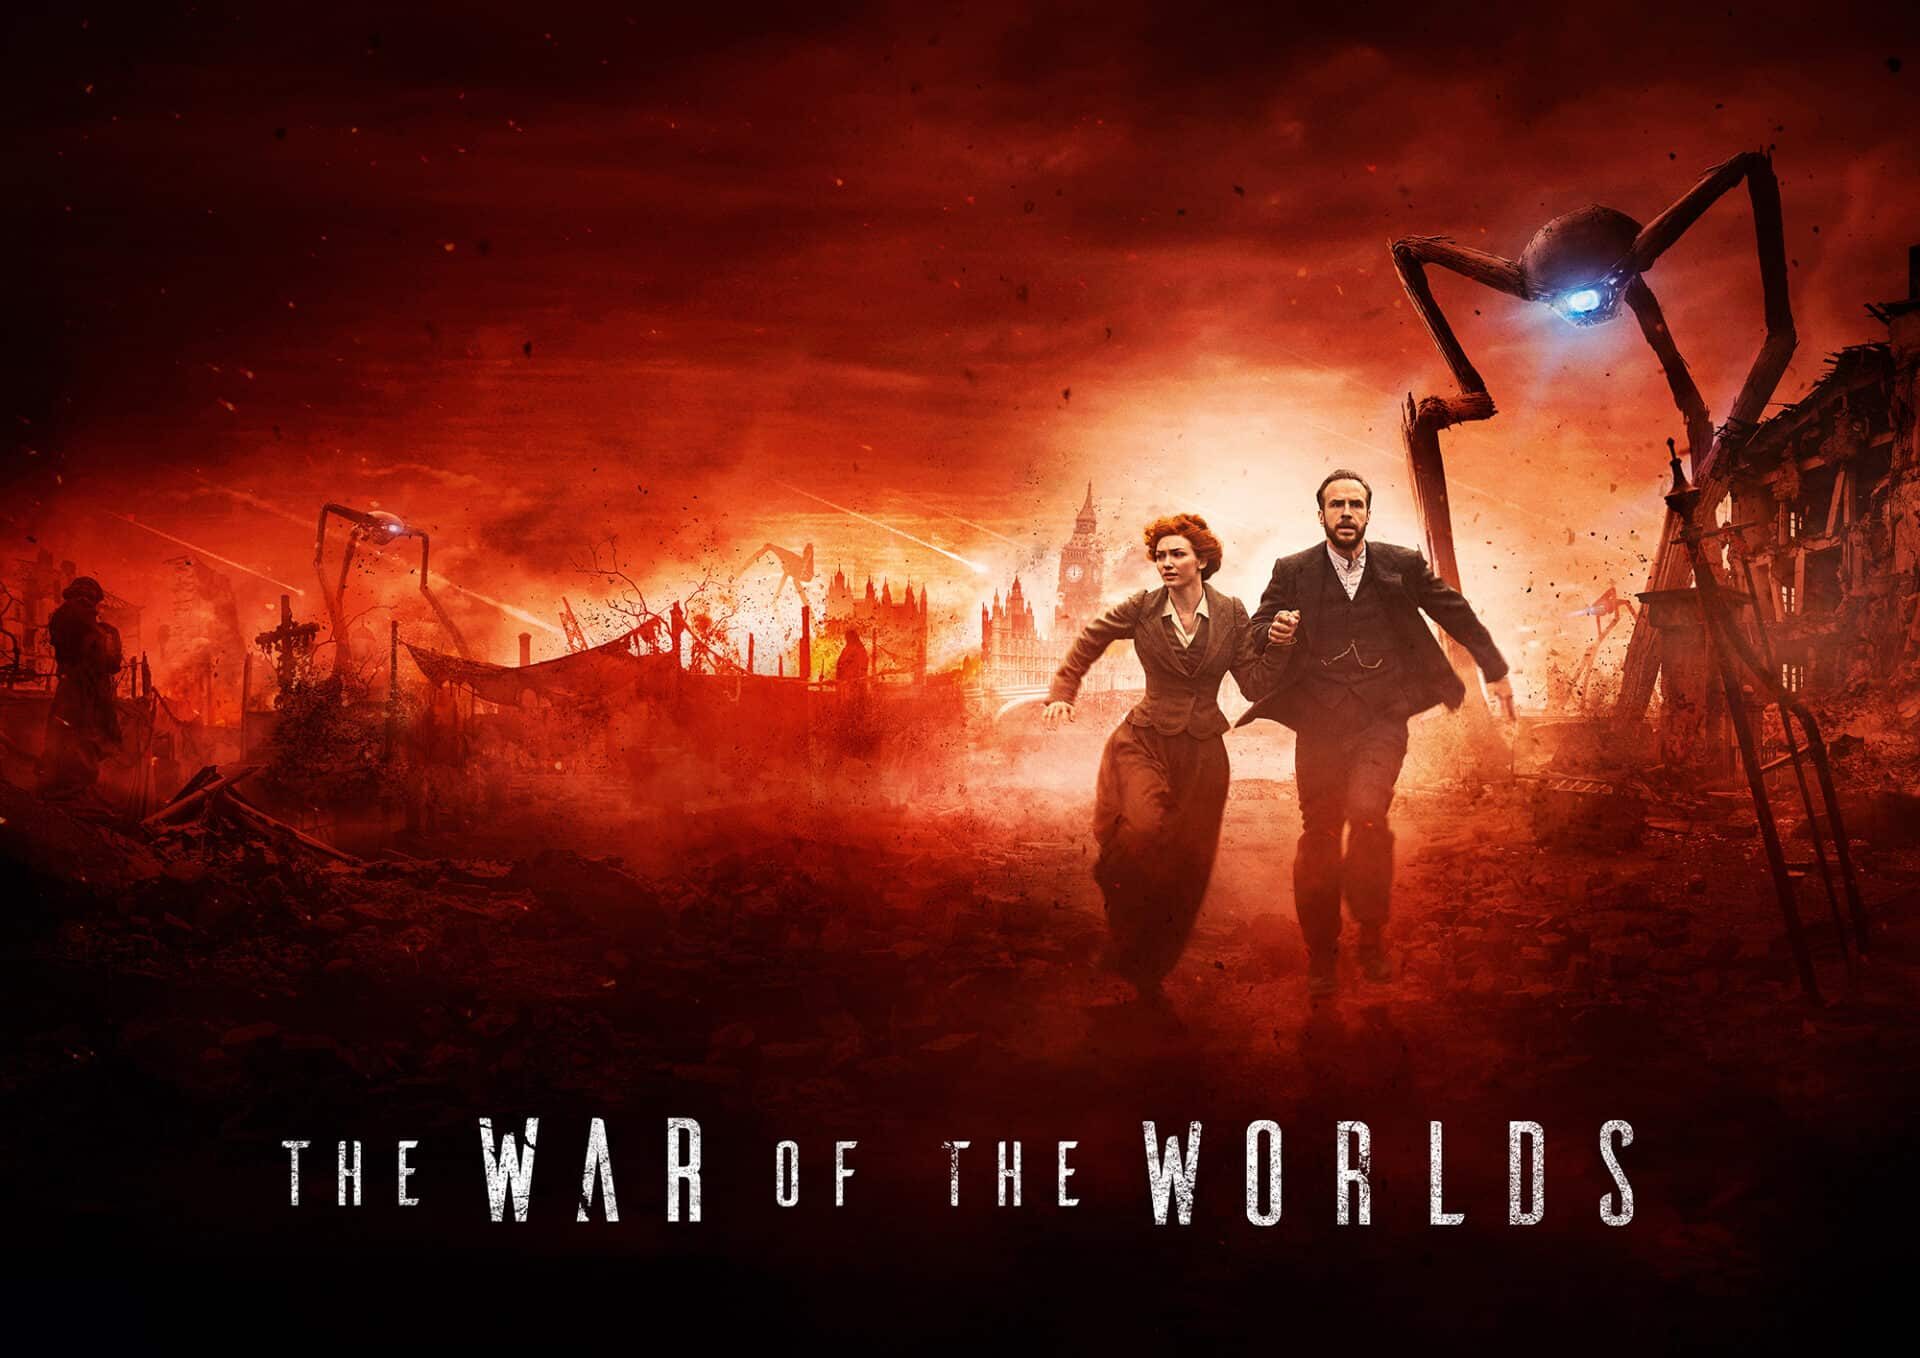 La guerra dei mondi: recensione finale della miniserie BBC